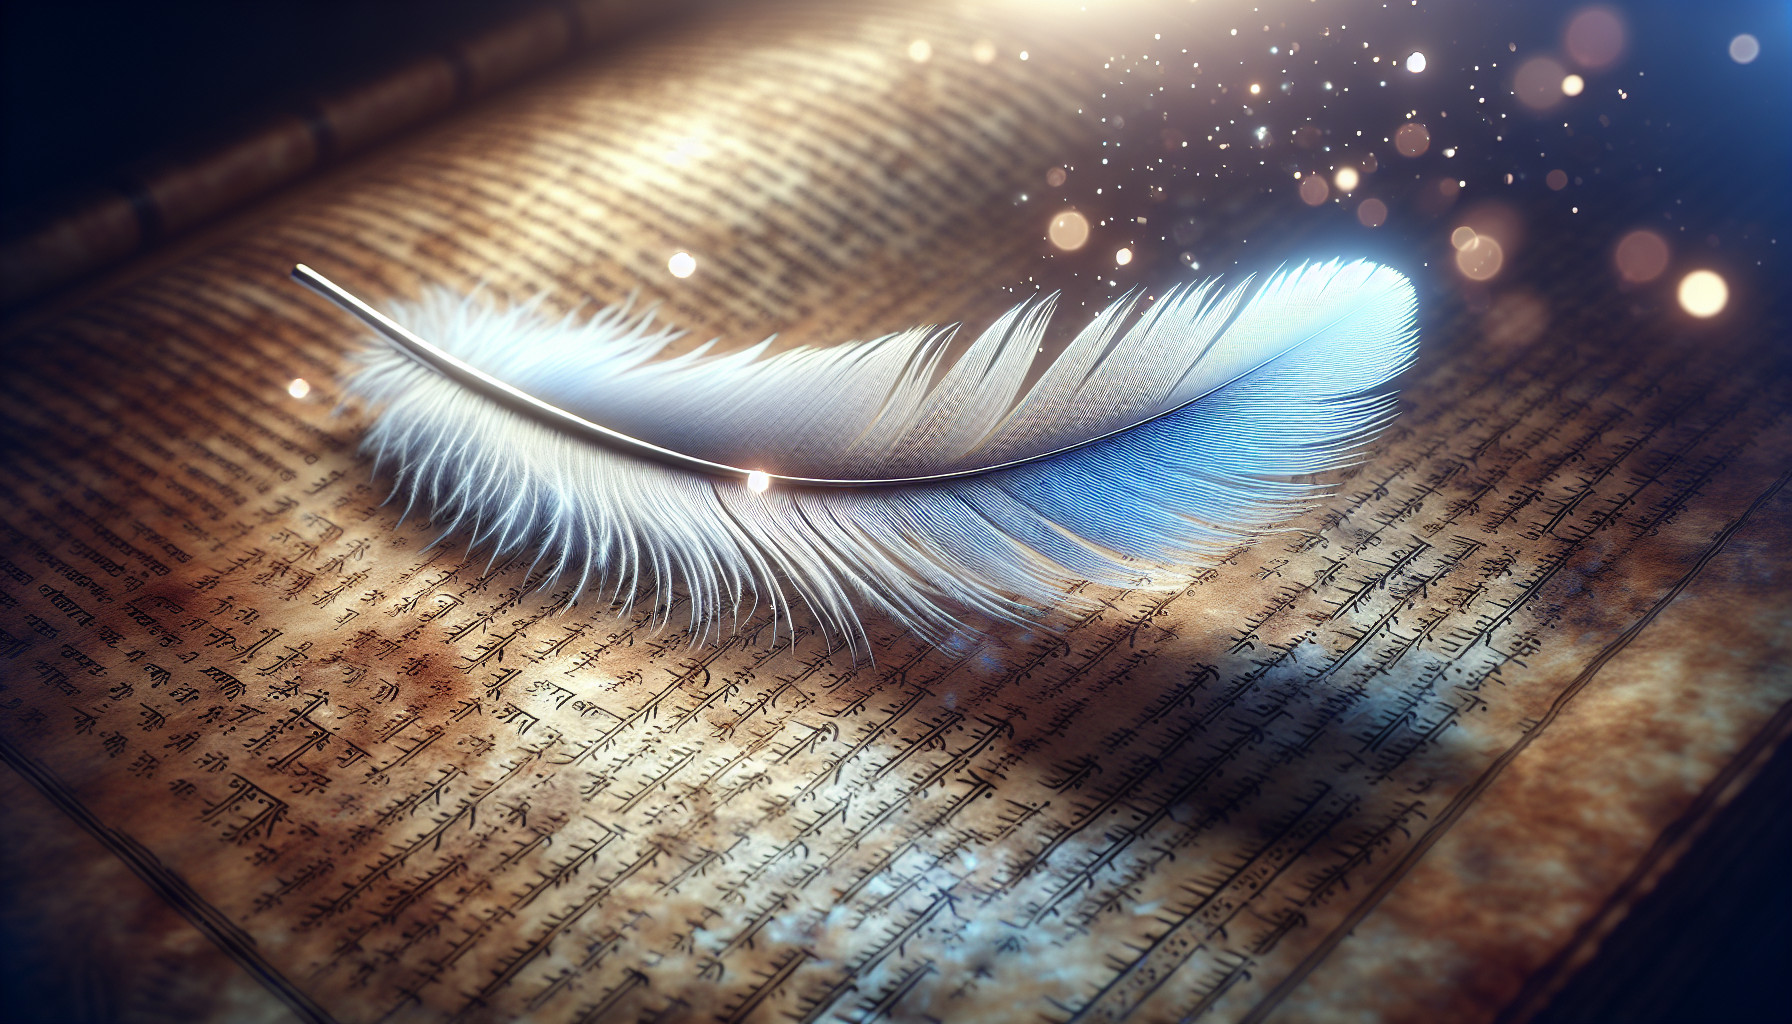 La Pluma En La Simbología Espiritual: Sabiduría Y Escritura Divina